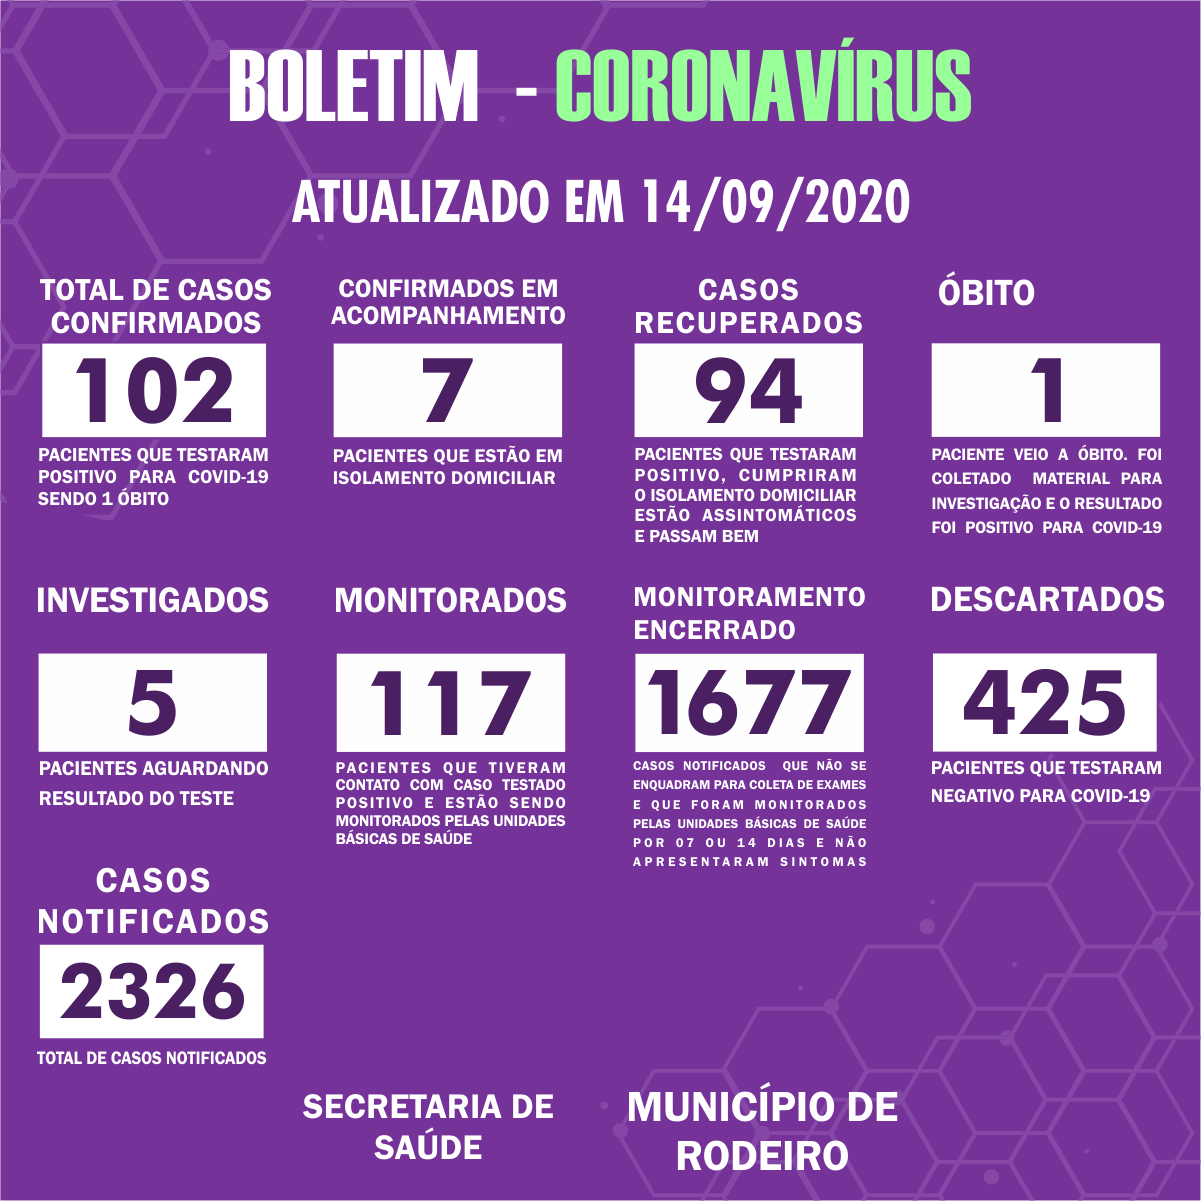 Boletim Epidemiológico do Município de Rodeiro sobre coronavírus, atualizado em 14/09/2020